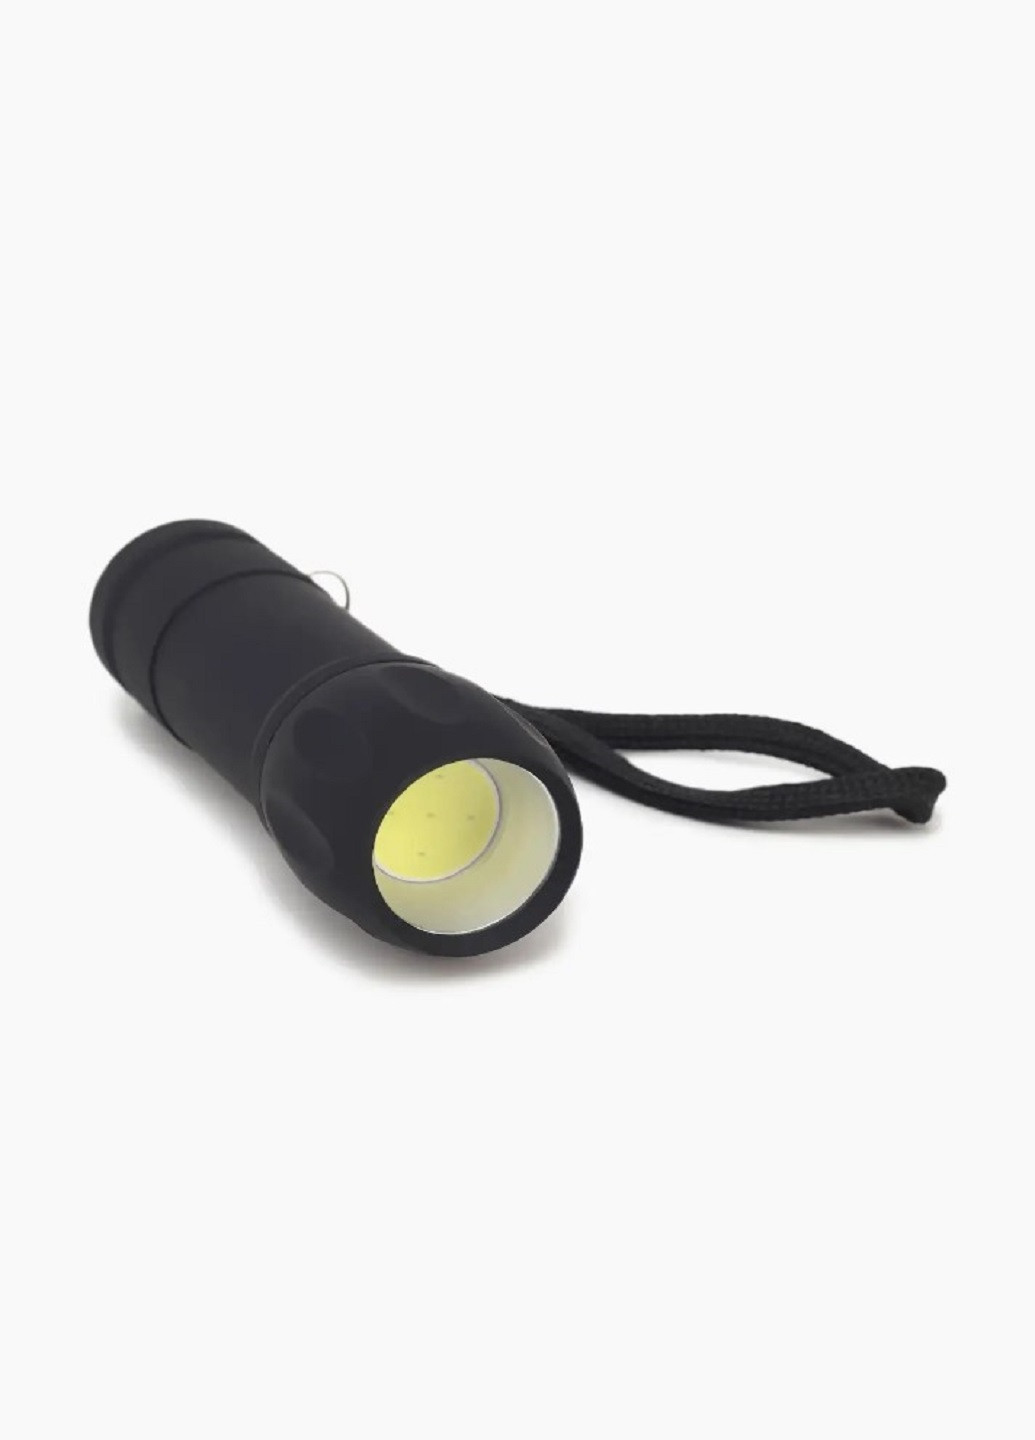 Универсальный ручной фонарь на батарейках K 4160 светодиодный Черный VTech (257079677)